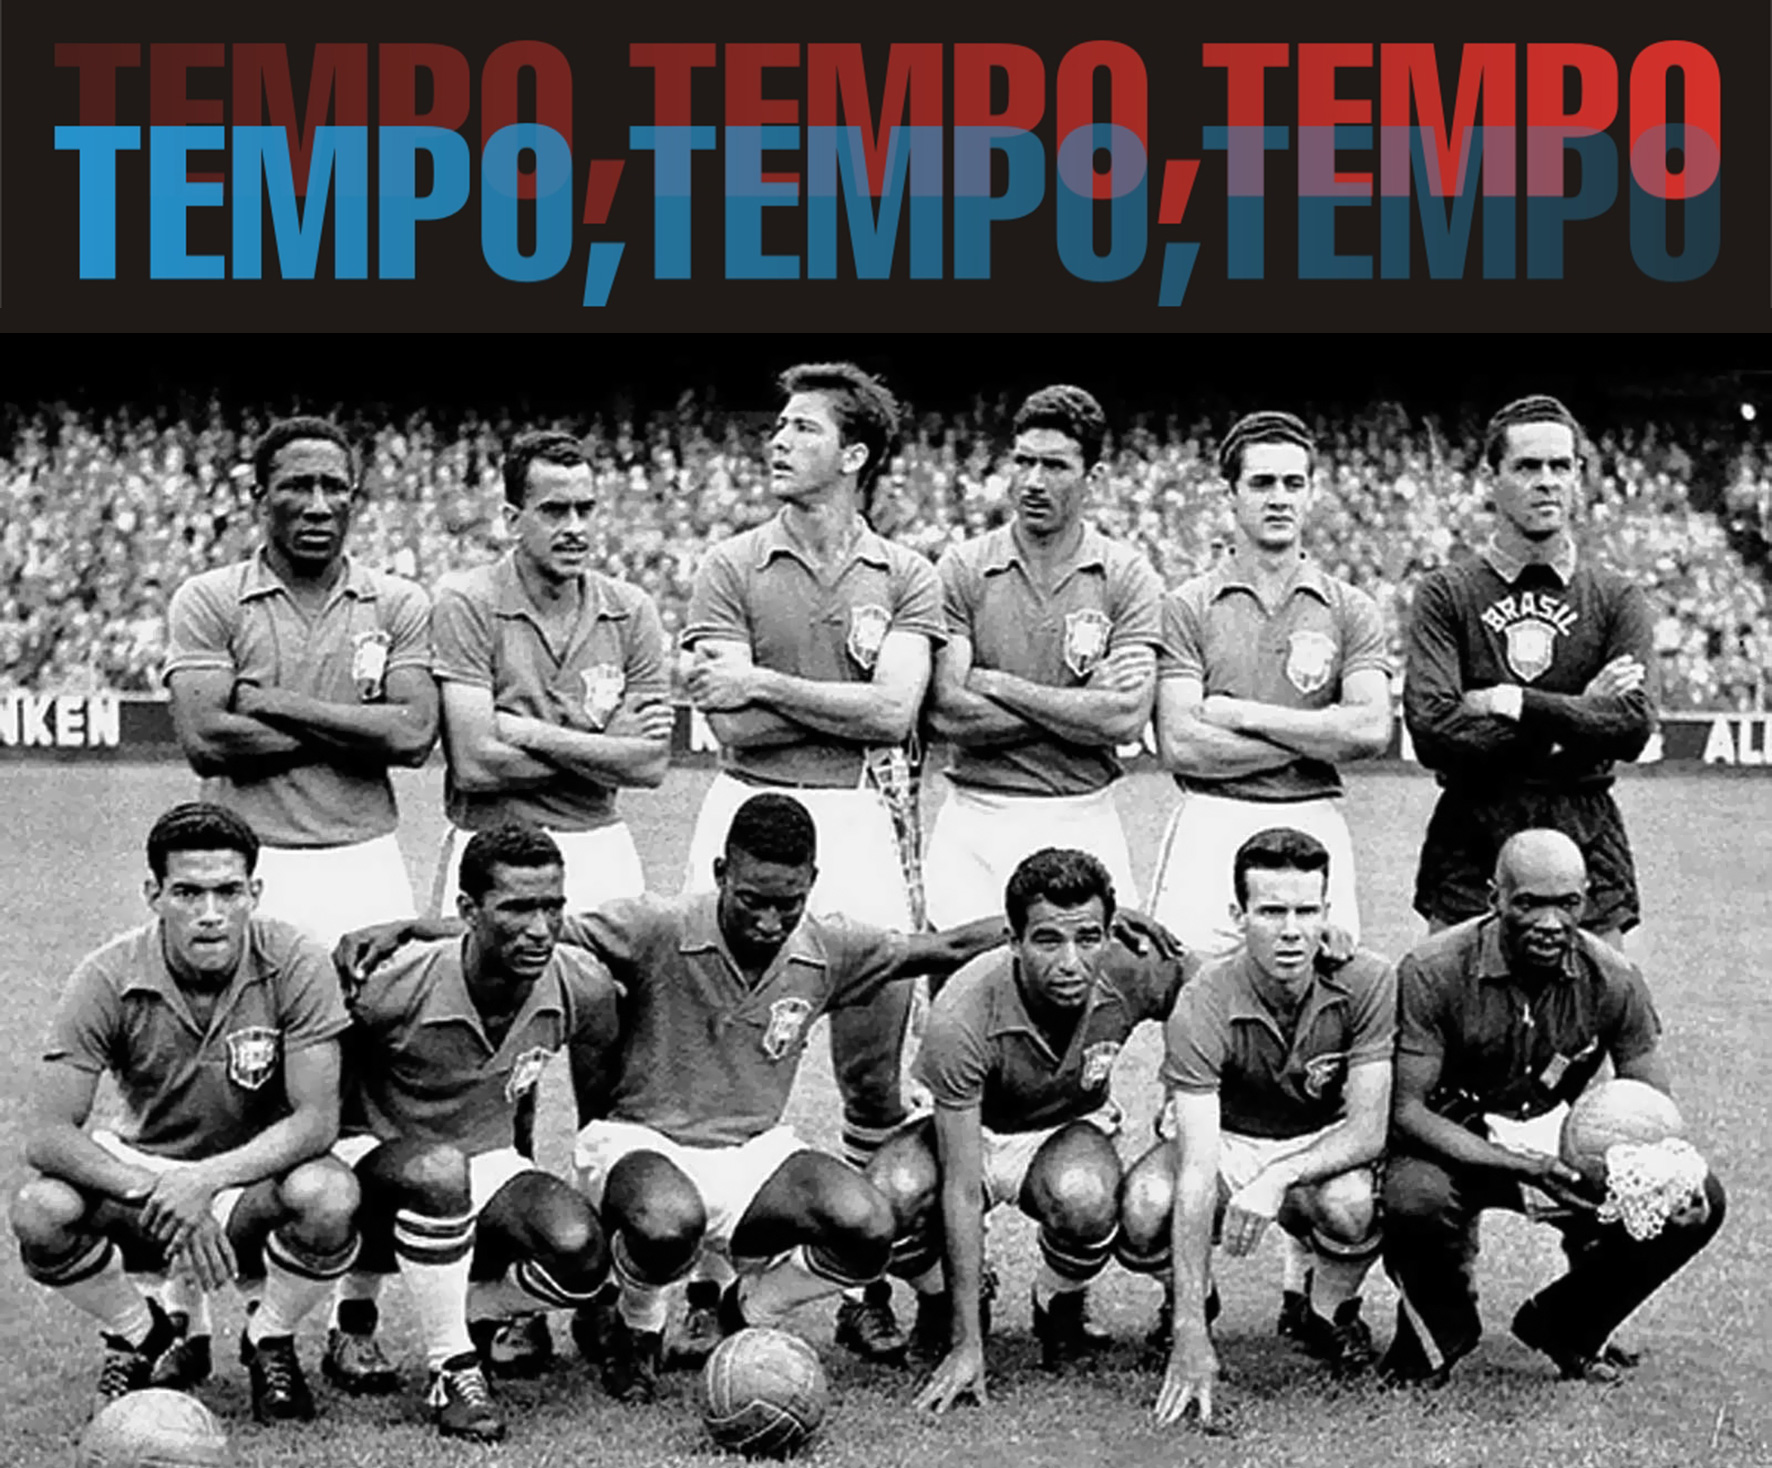 Copa-1958-5